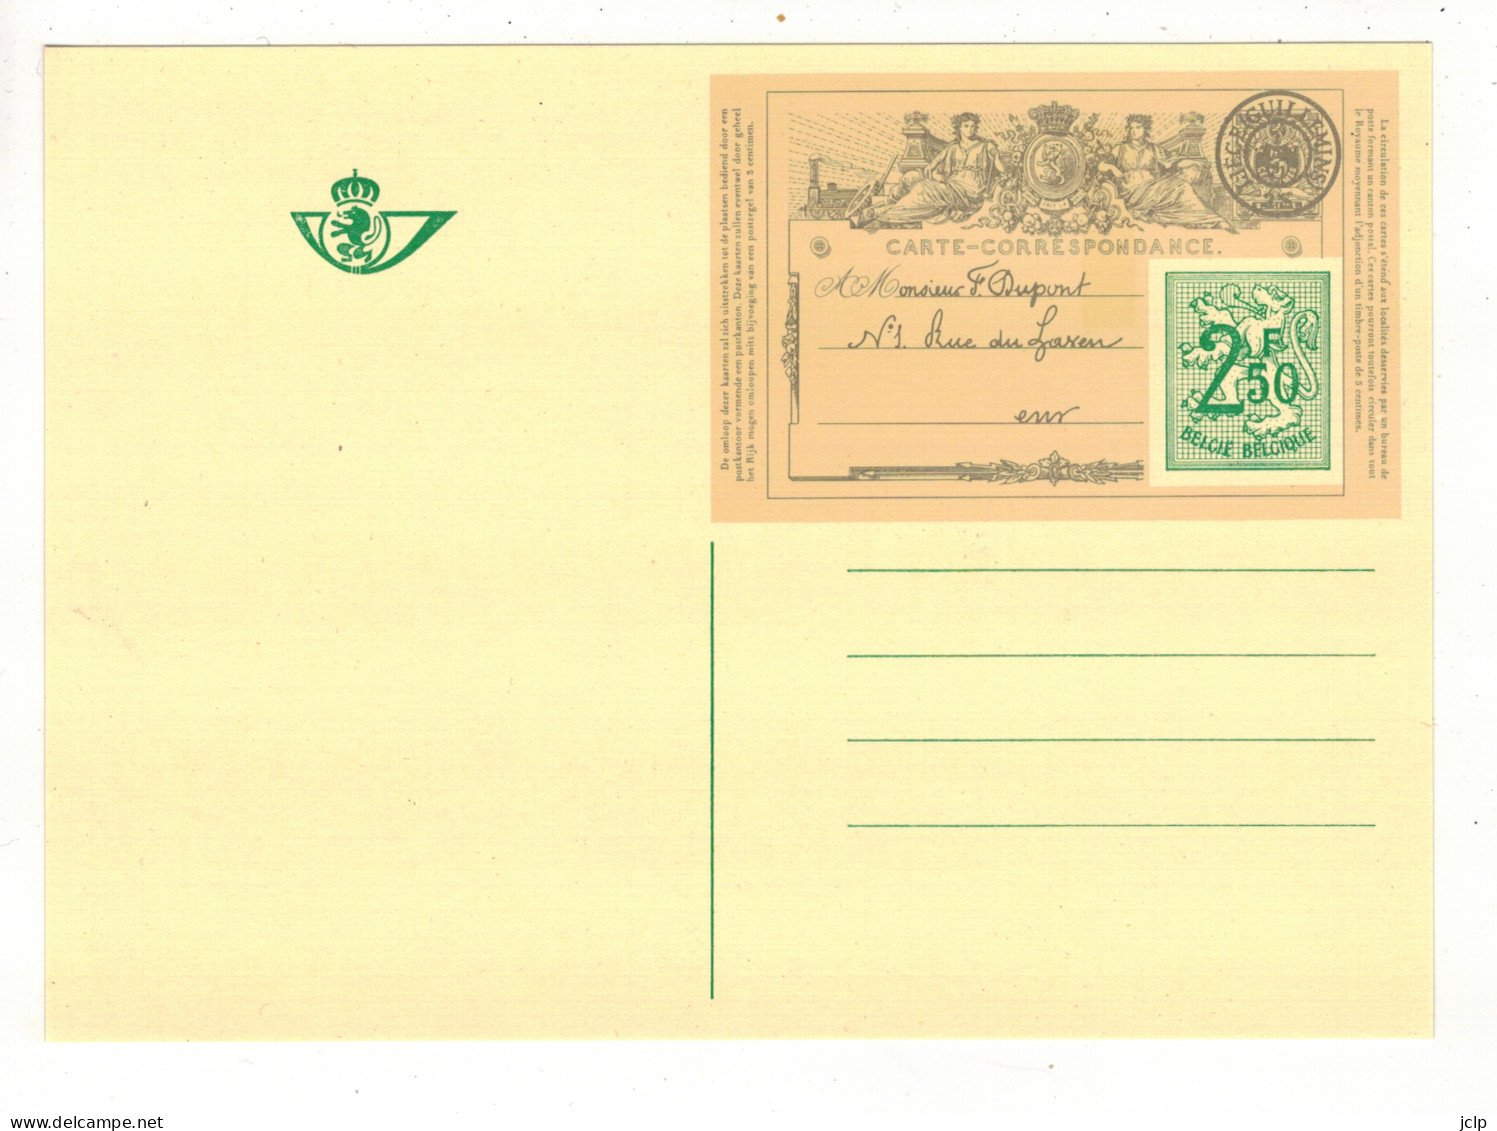 1971 - Centenaire De La Première Carte Postale De Belgique. - Souvenir Cards - Joint Issues [HK]